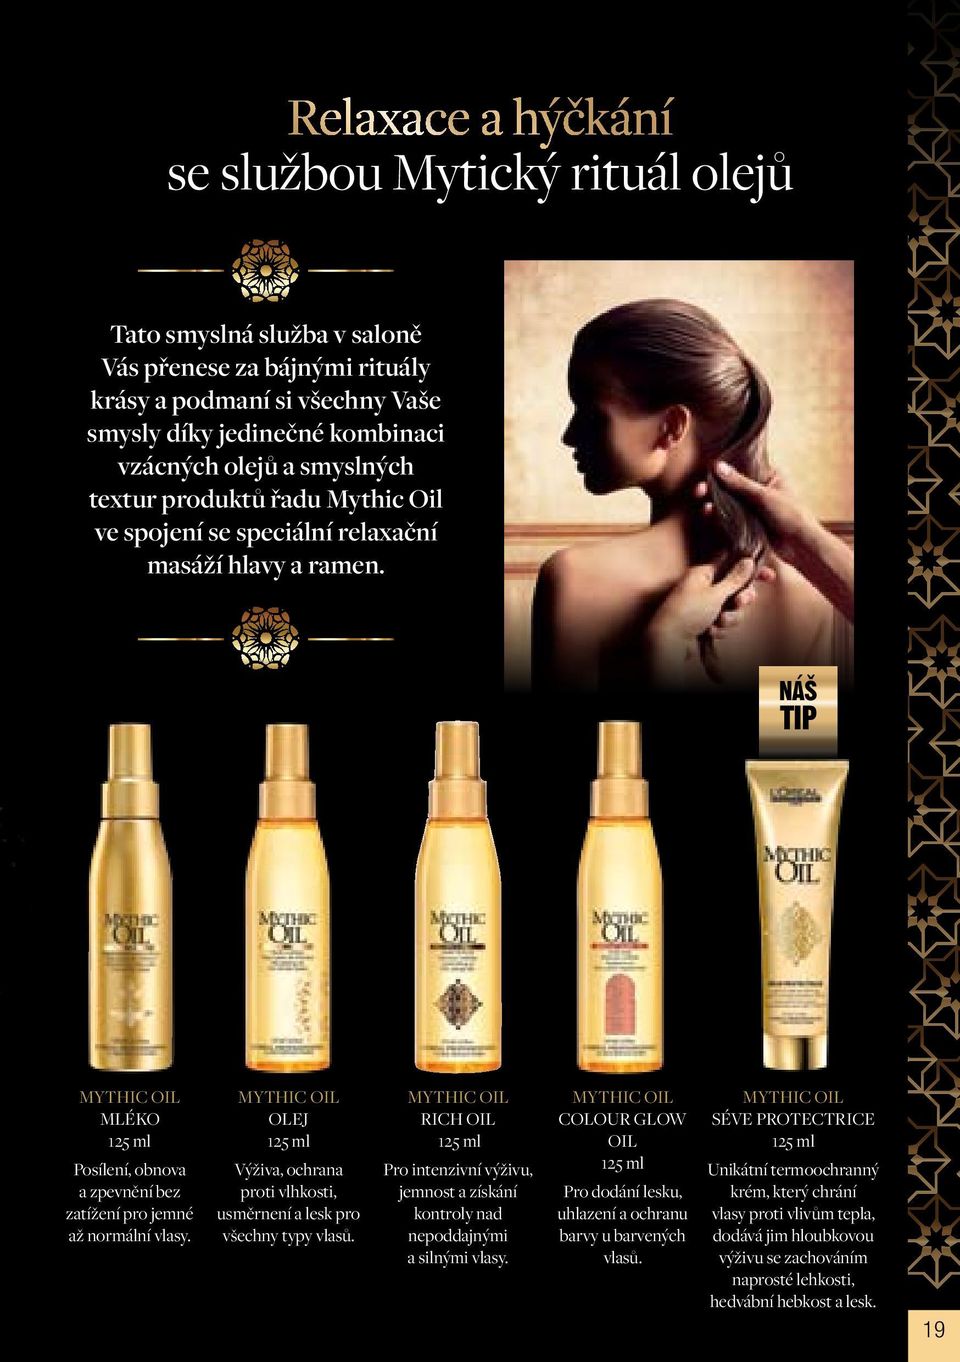 Mythic Oil OLEJ 125 ml Výživa, ochrana proti vlhkosti, usměrnení a lesk pro všechny typy vlasů.